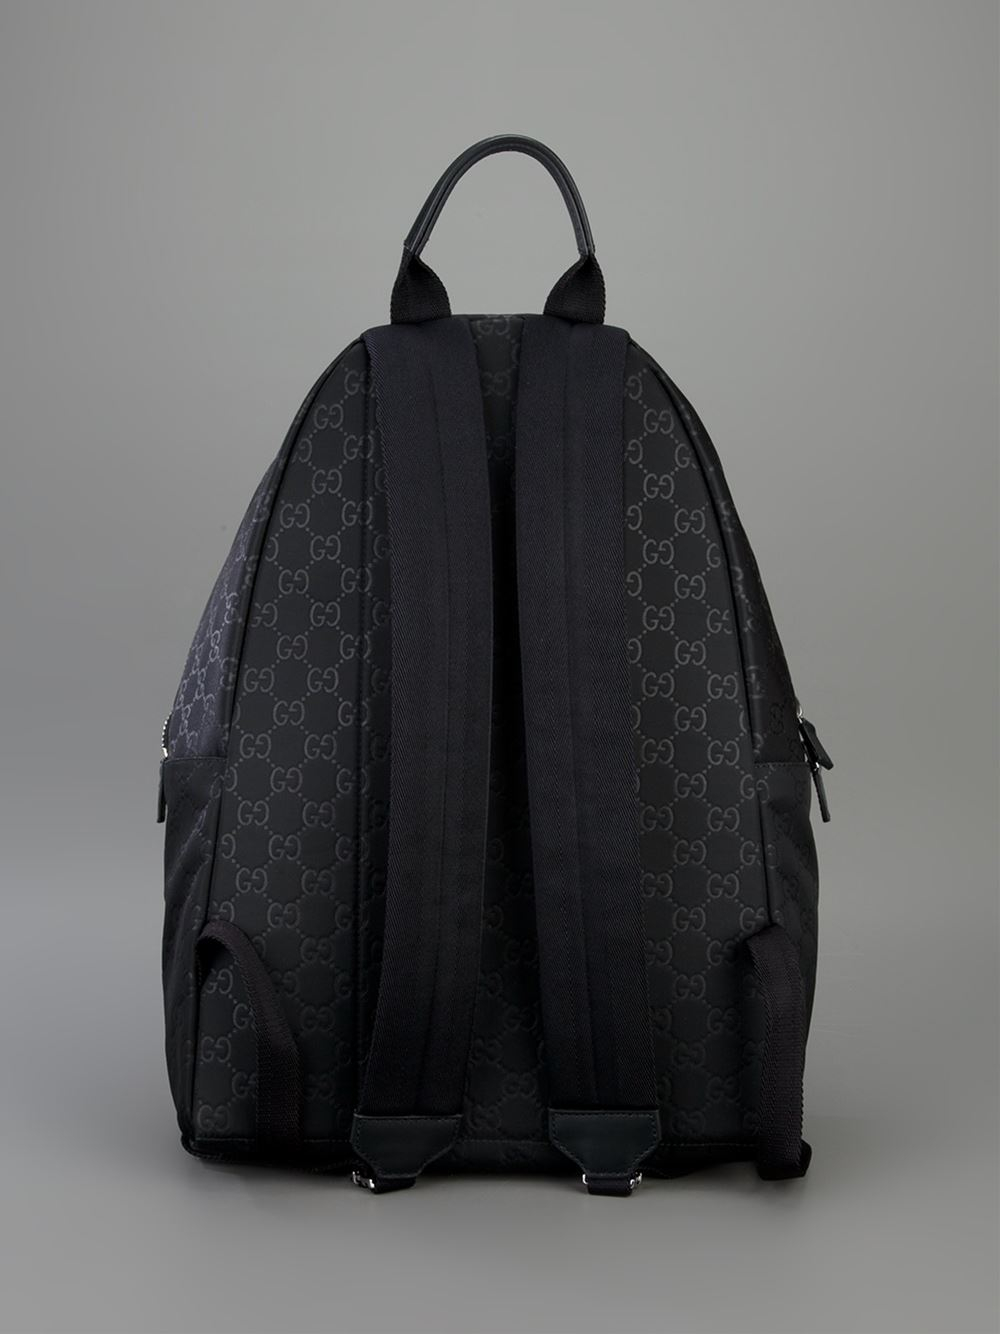 Lyst - Gucci Embossed Monogram Backpack in Black